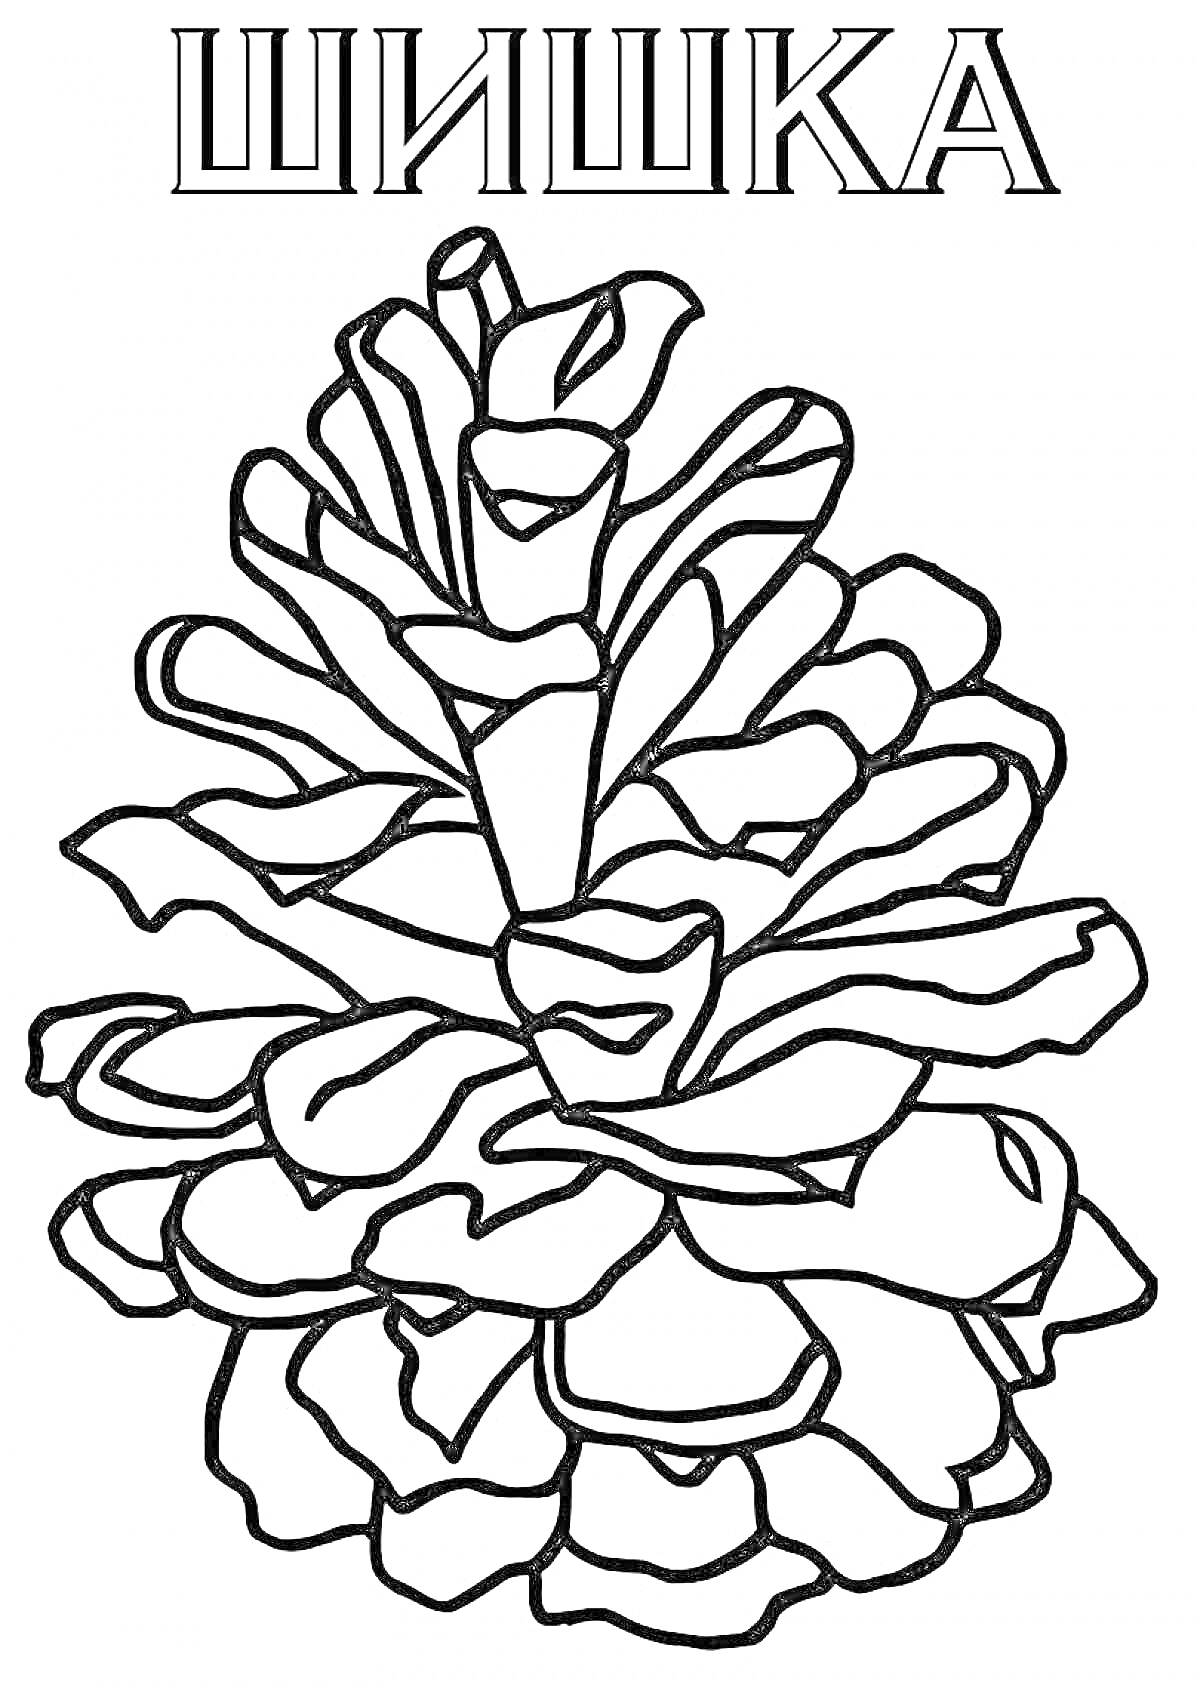 Раскраска Шишка, стилизованное изображение сосновой шишки с надписью 